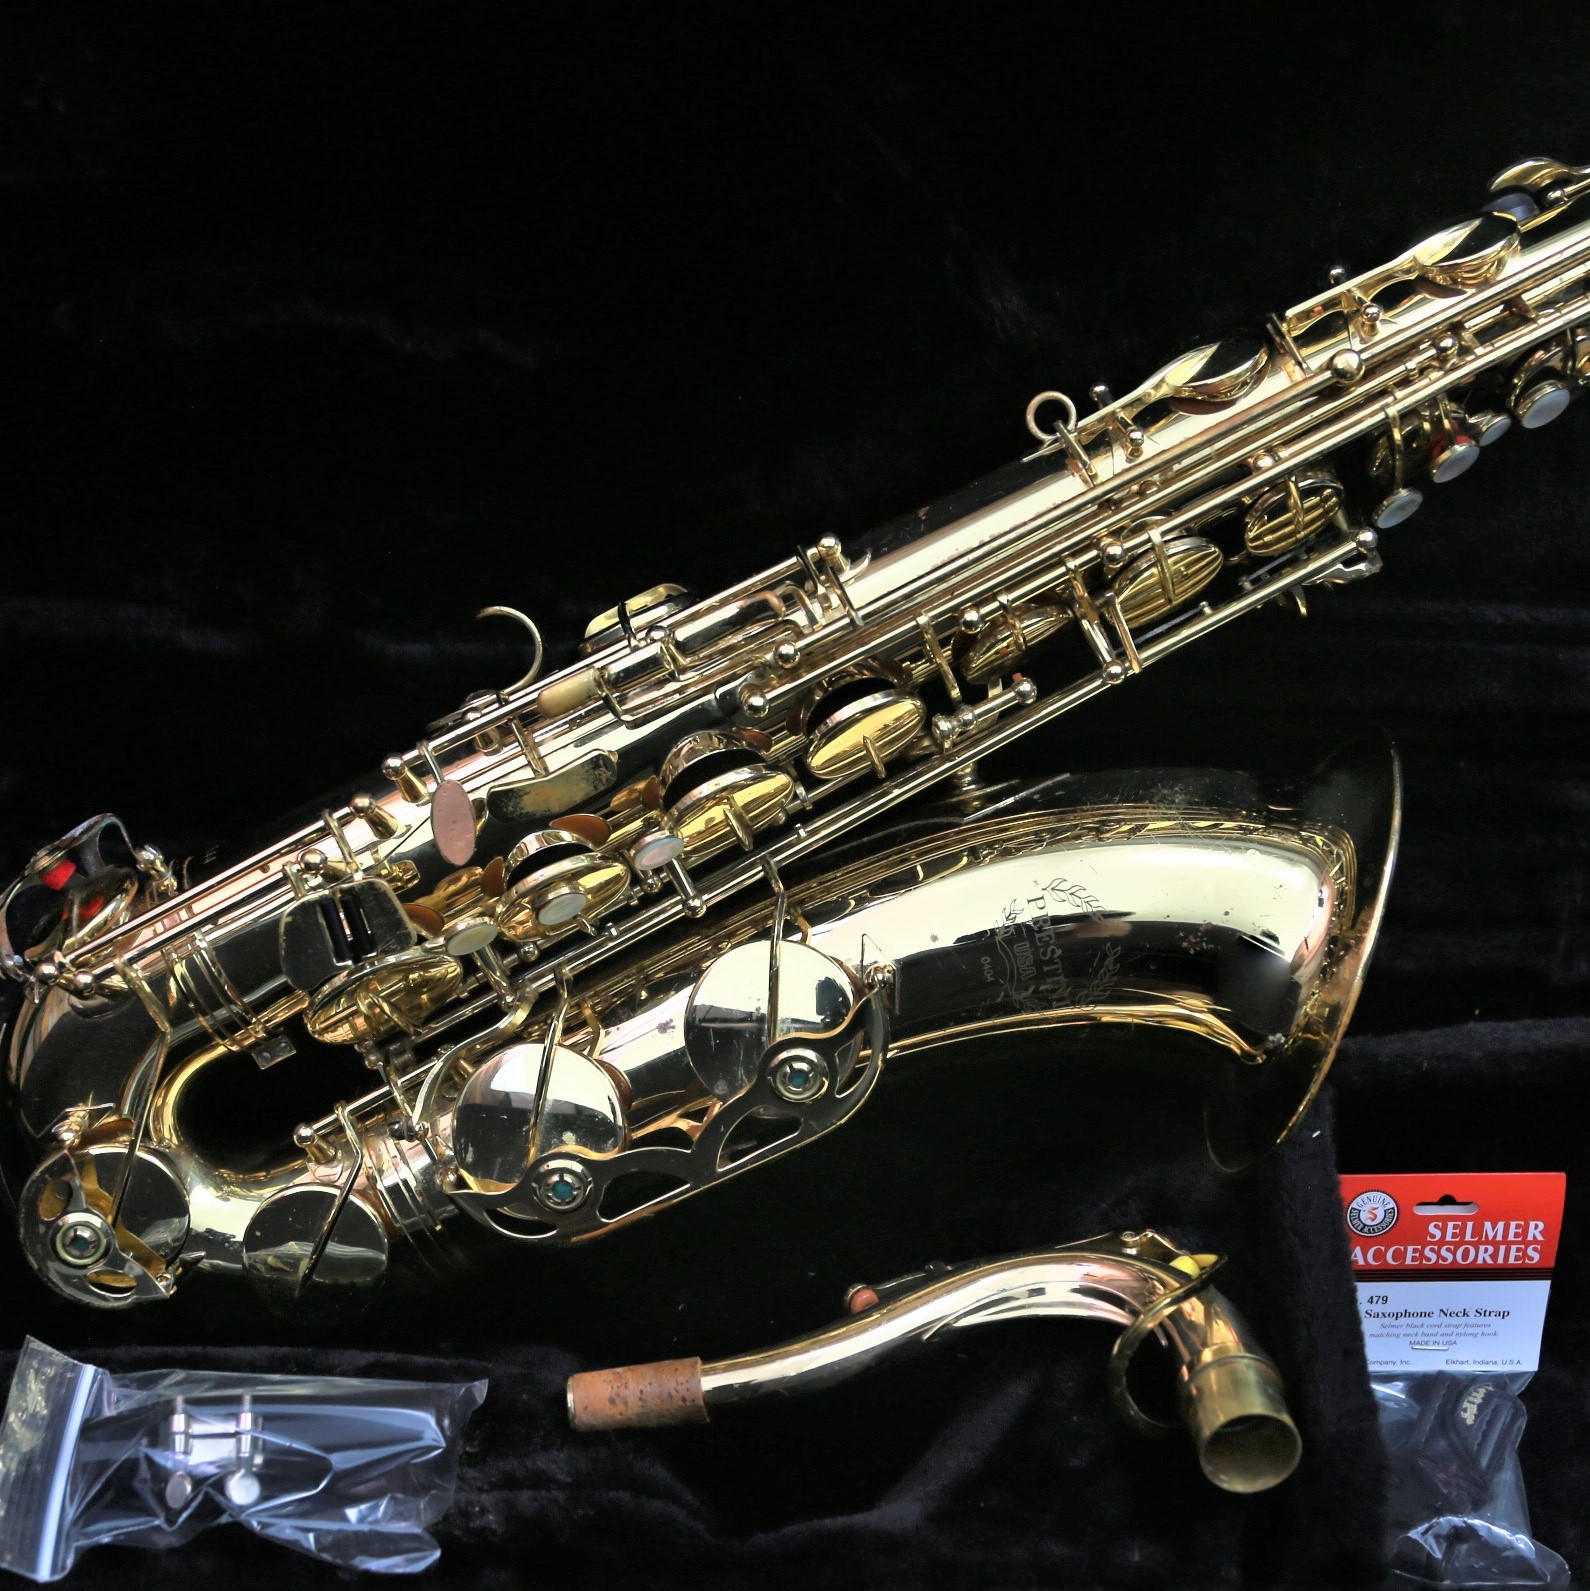 Student Tenor Saxophone